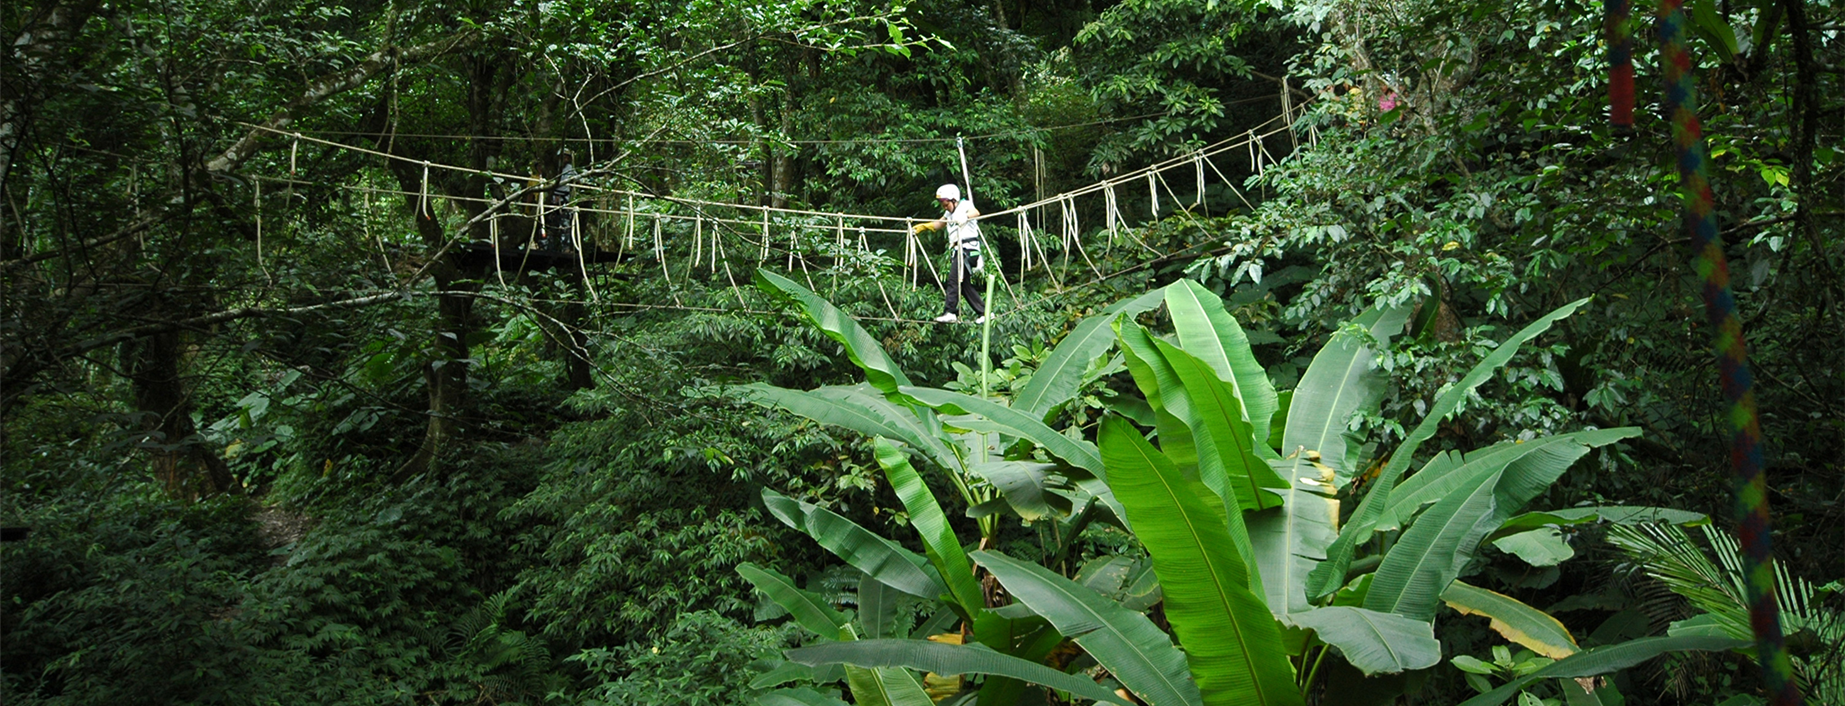 圖片來源:野猴子探險森林官網